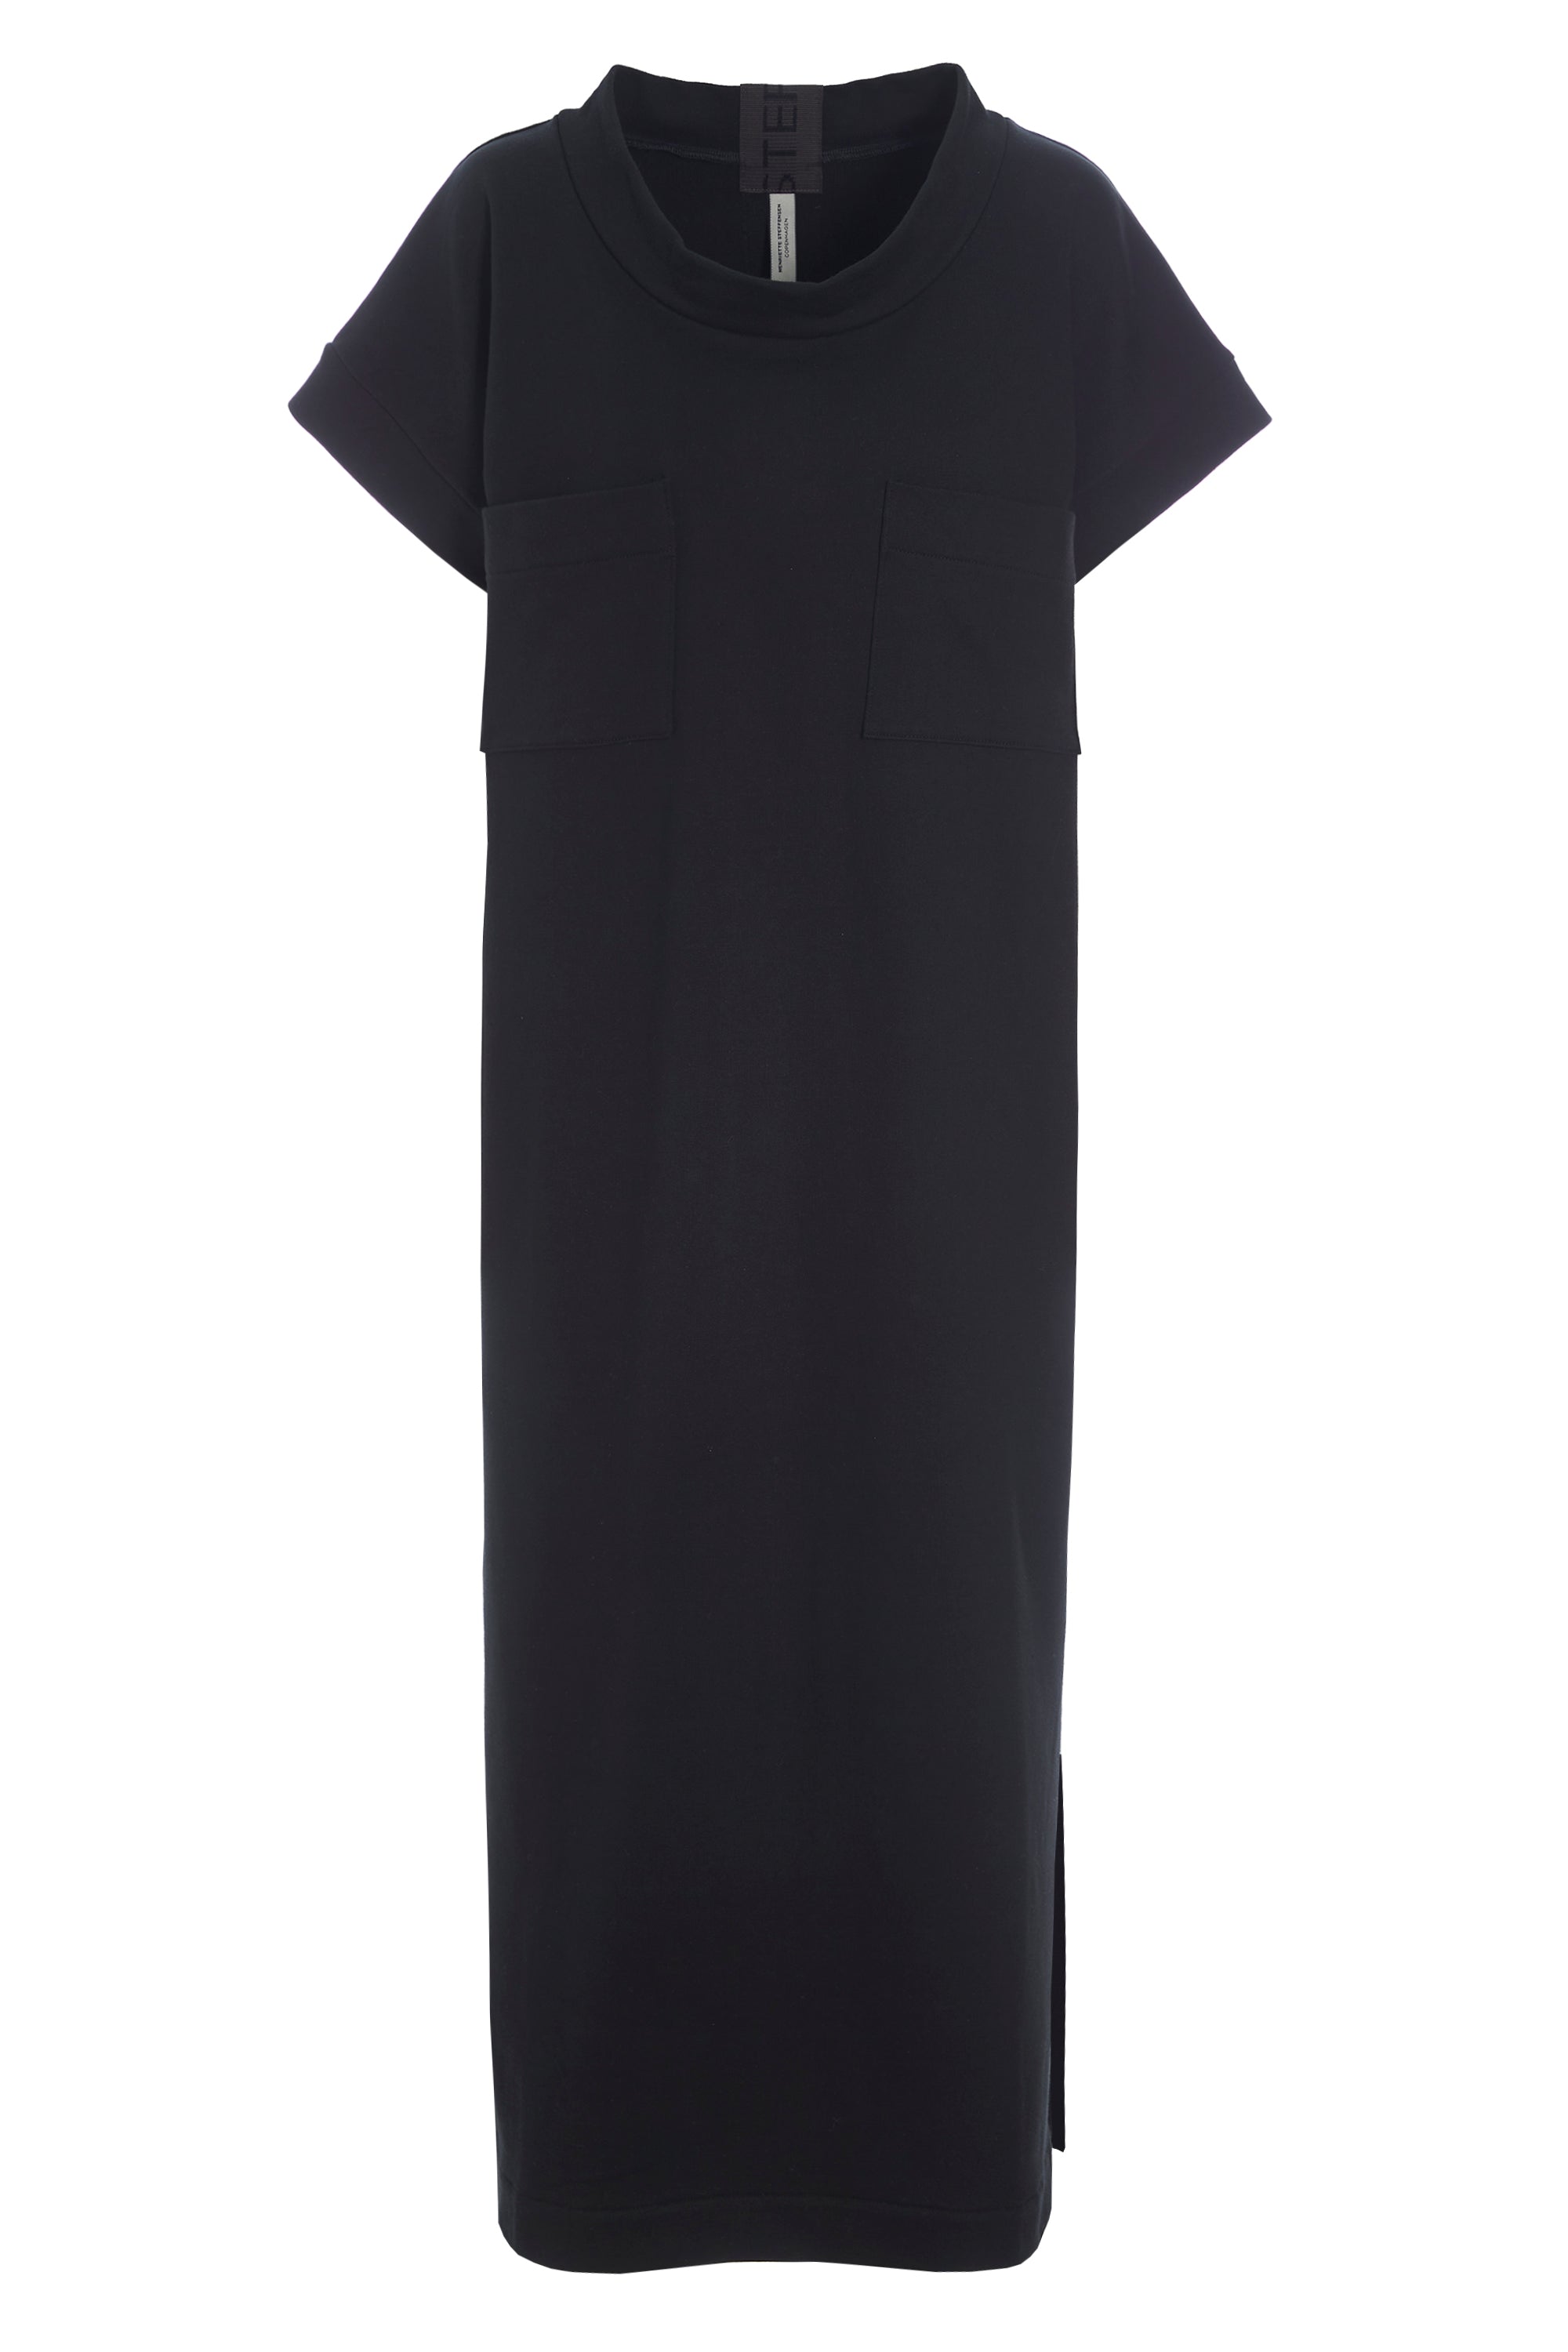 HENRIETTE STEFFENSEN COPENHAGEN LONG DRESS - 73402 DRESS cotton BLACK 900